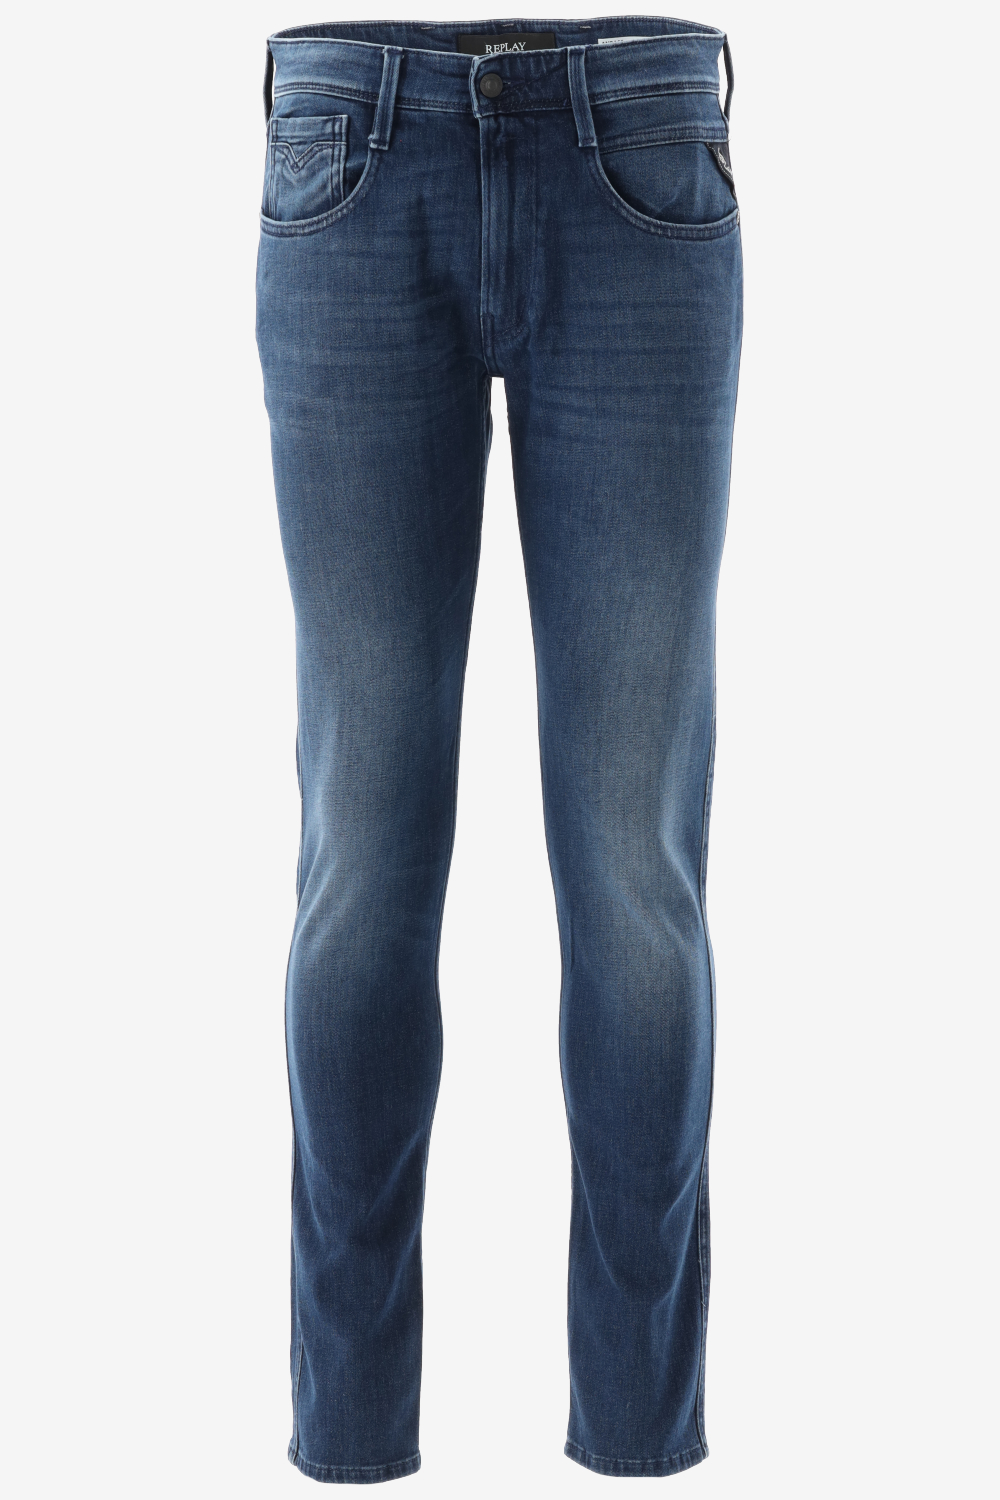 Betrouwbaar scheidsrechter Afkorting Replay Jeans Outlet Sale - T-shirts - Tops - Truien - - Bergmans Fashion  Outlet - Webshop | GRATIS VERZENDING!